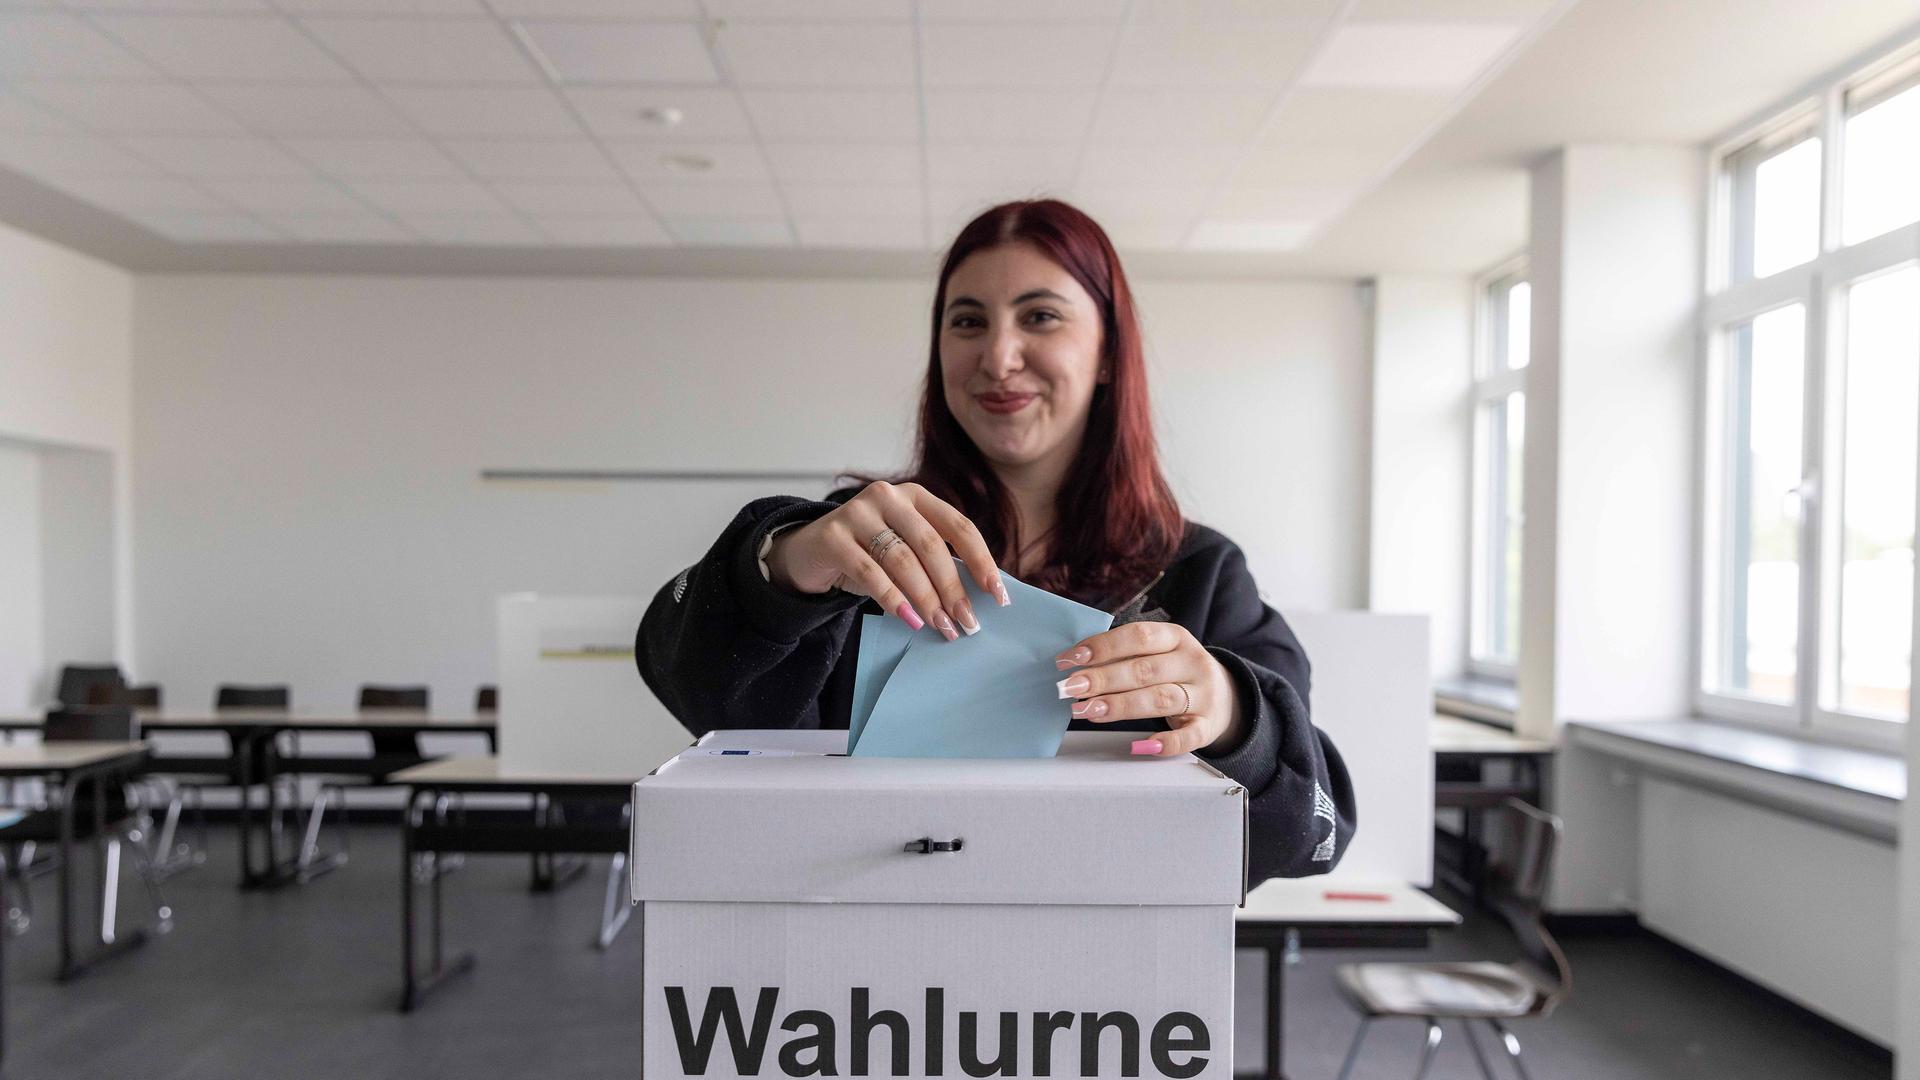 Eine junge Wählerin steht in einem Wahl-Raum und wirft einen Wahl-Zettel in eine Wahl-Urne.